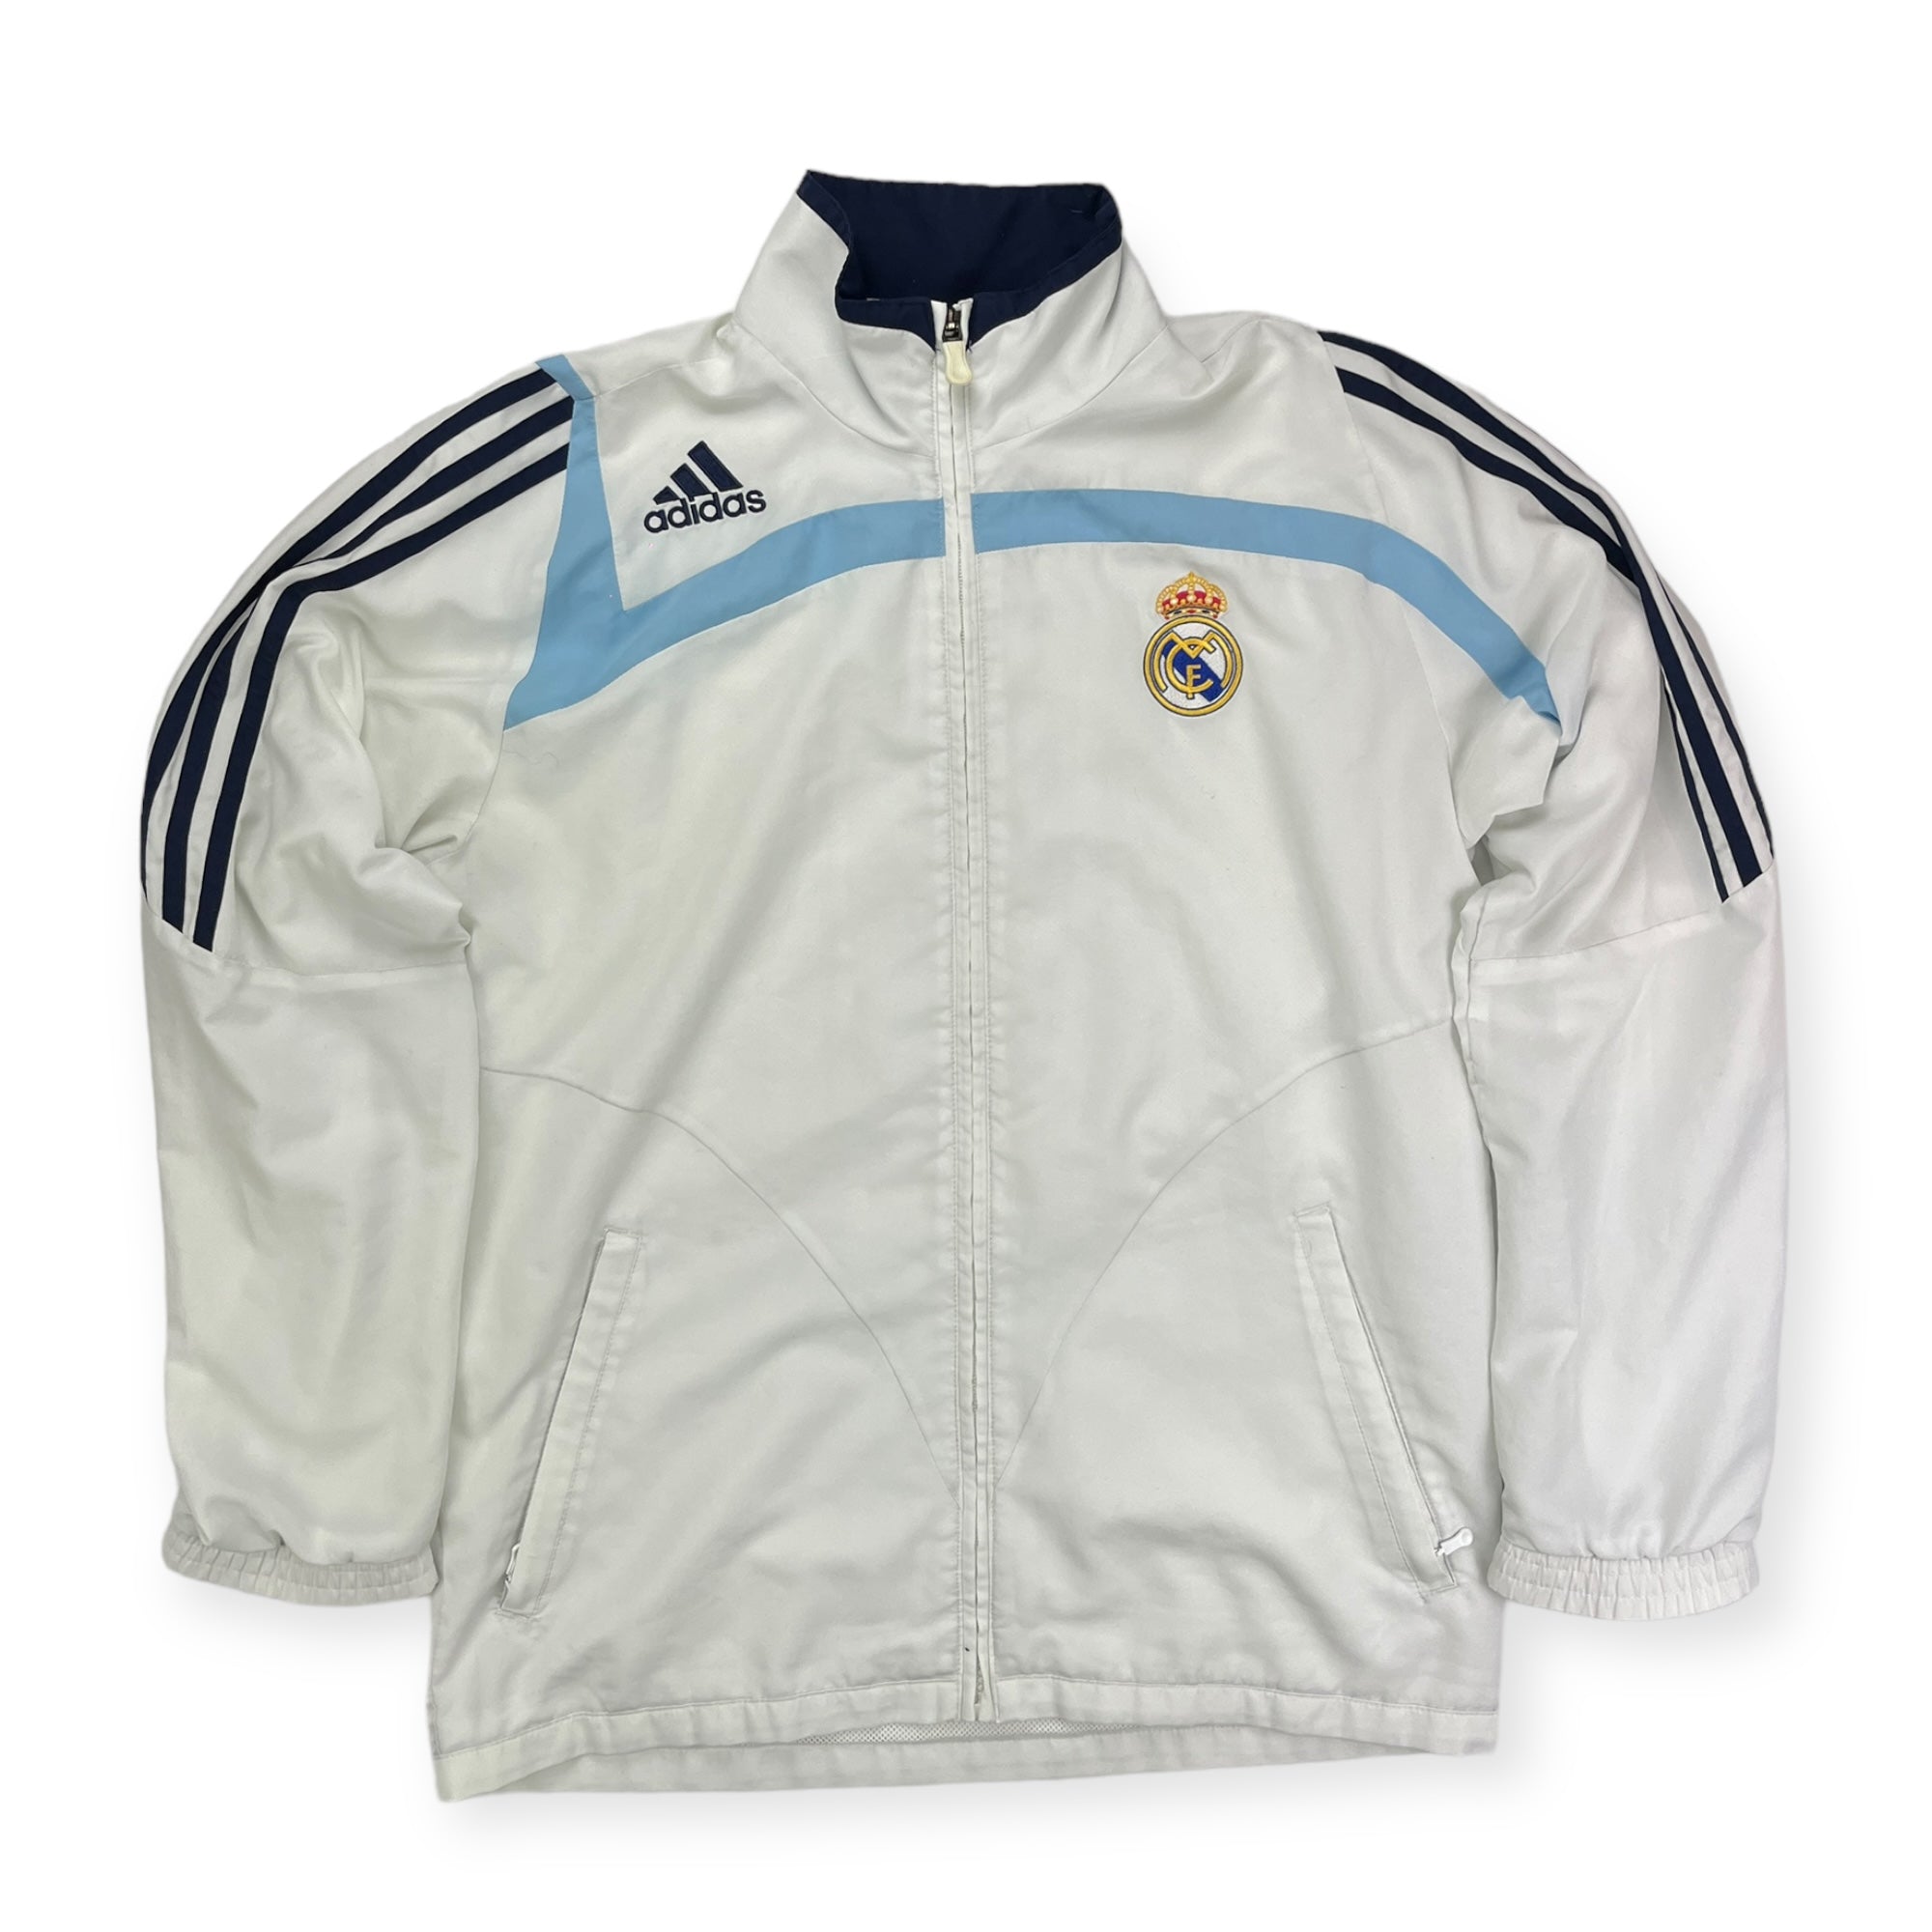 Real Madrid 2007 Tracksuit Jacket